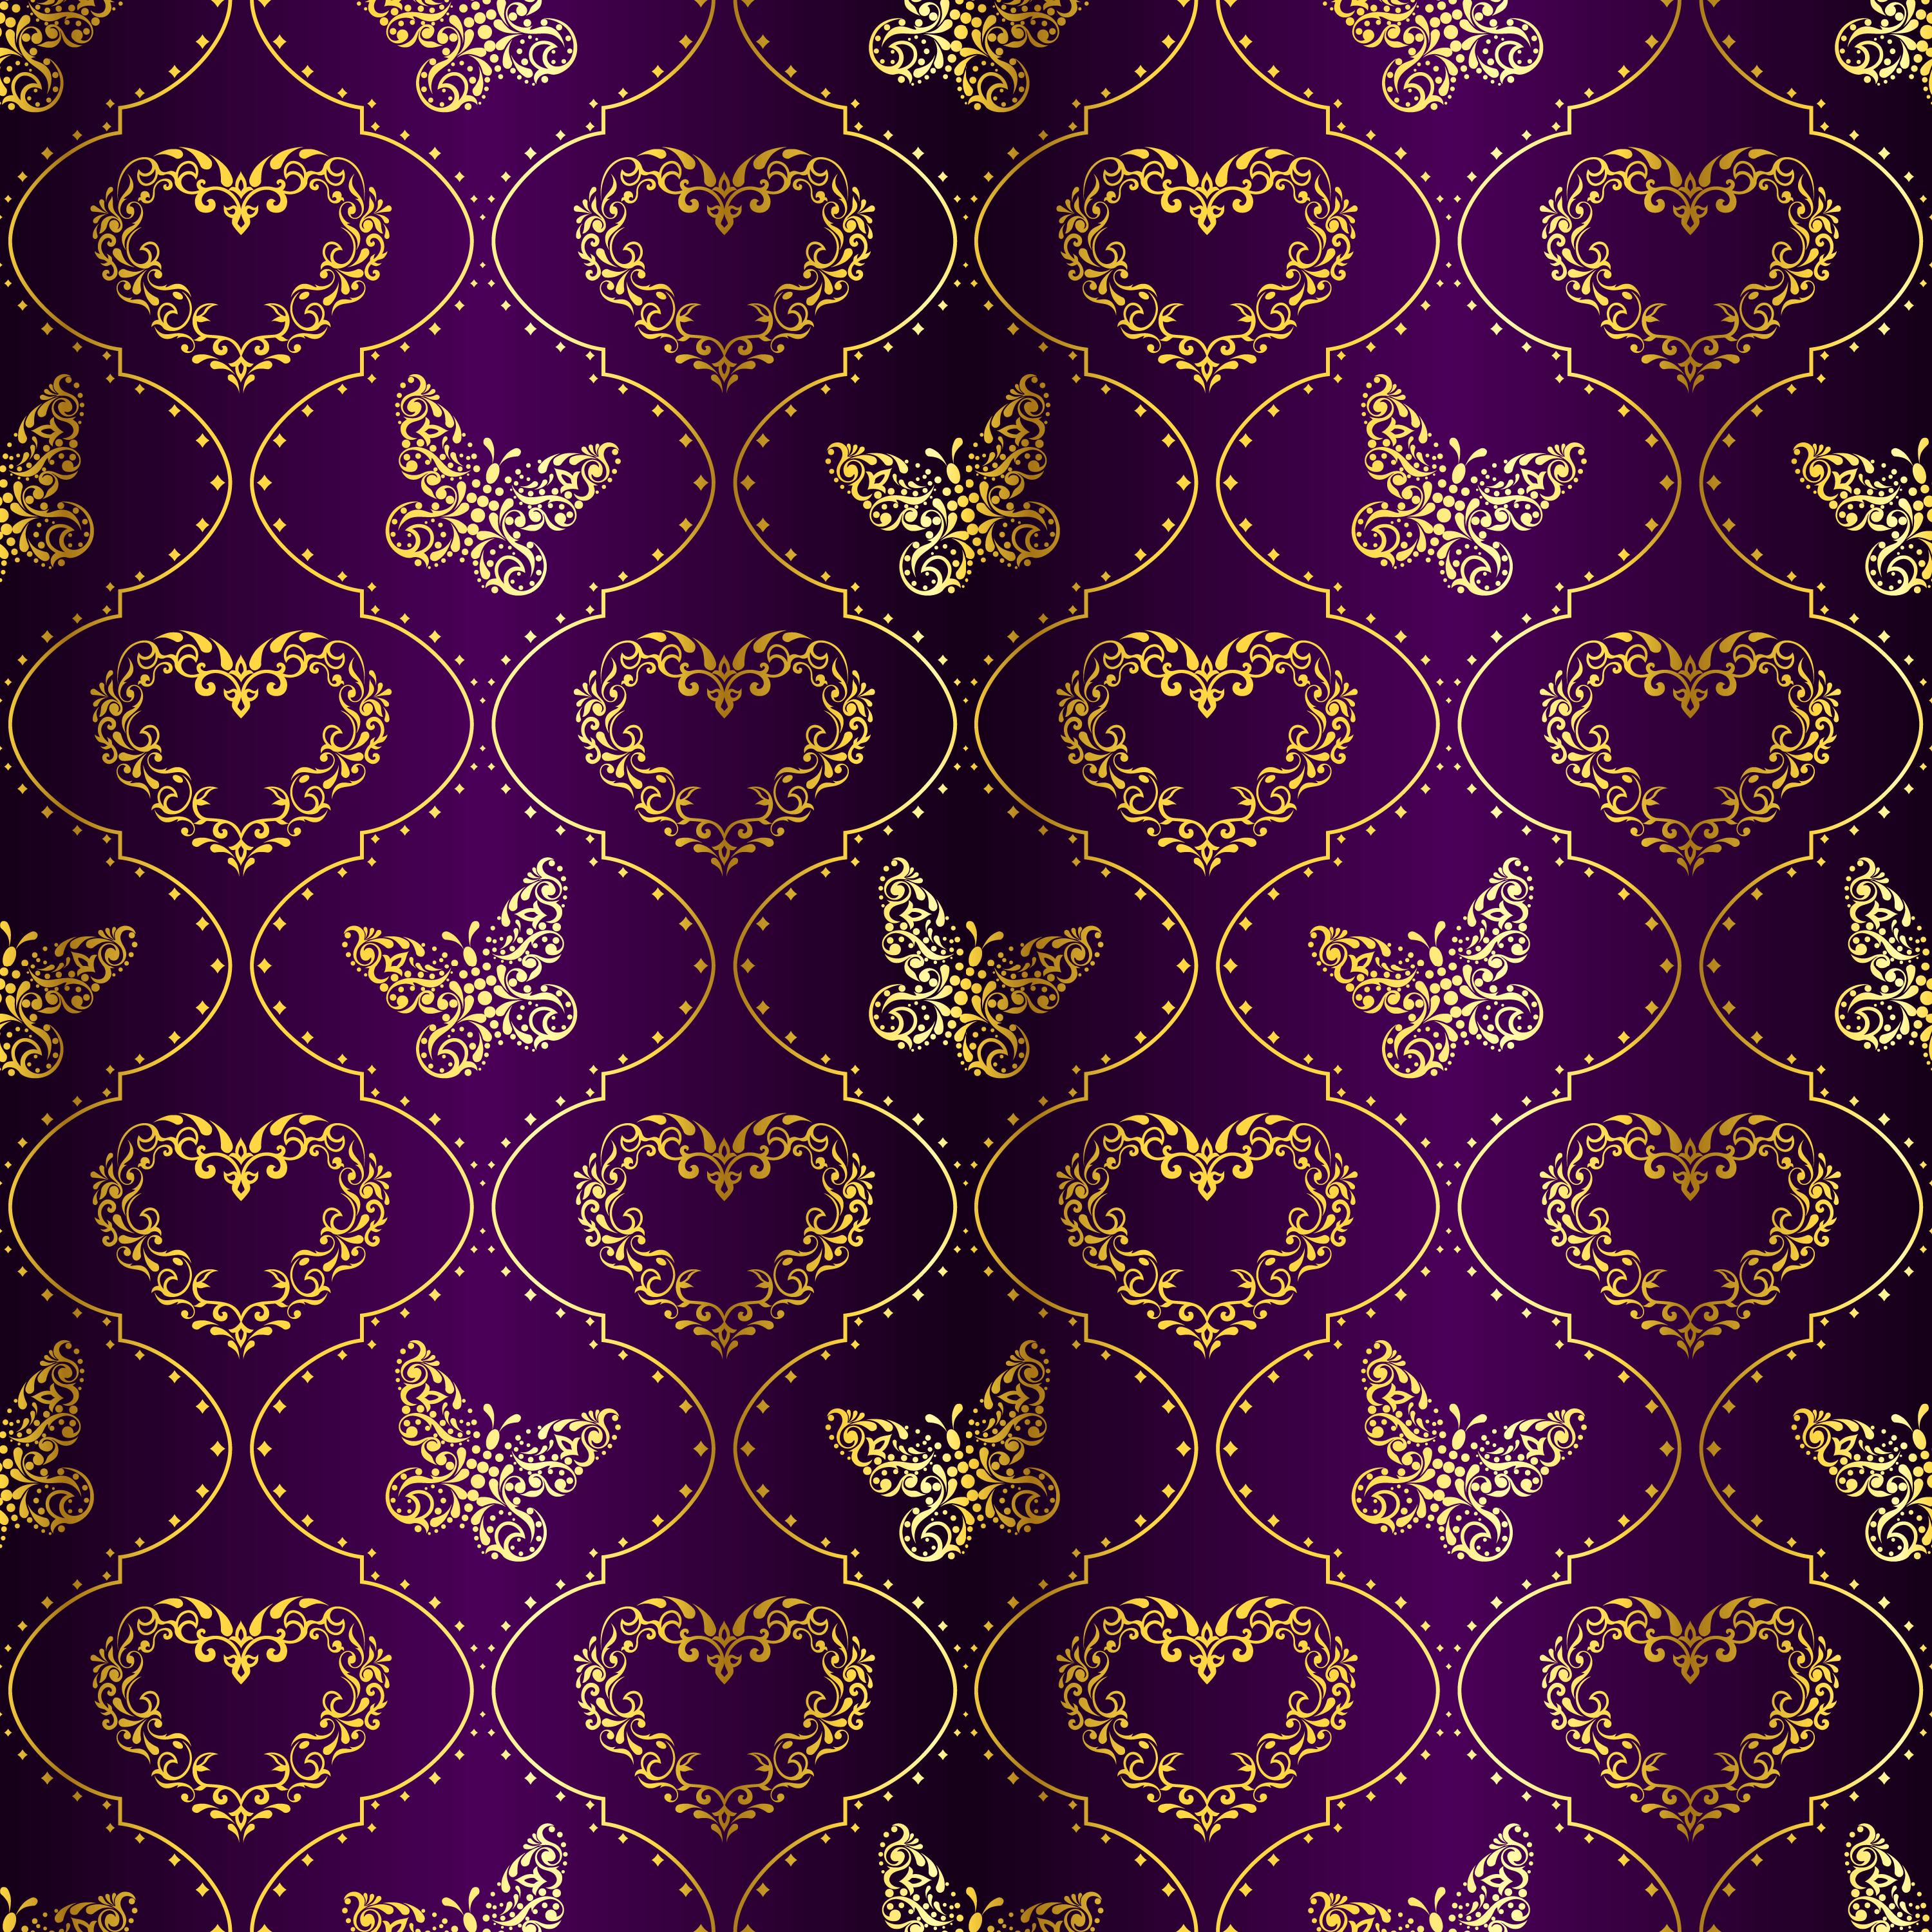 壁紙 背景イラスト 花の模様 柄 パターン No 356 エレガント 蝶とハート